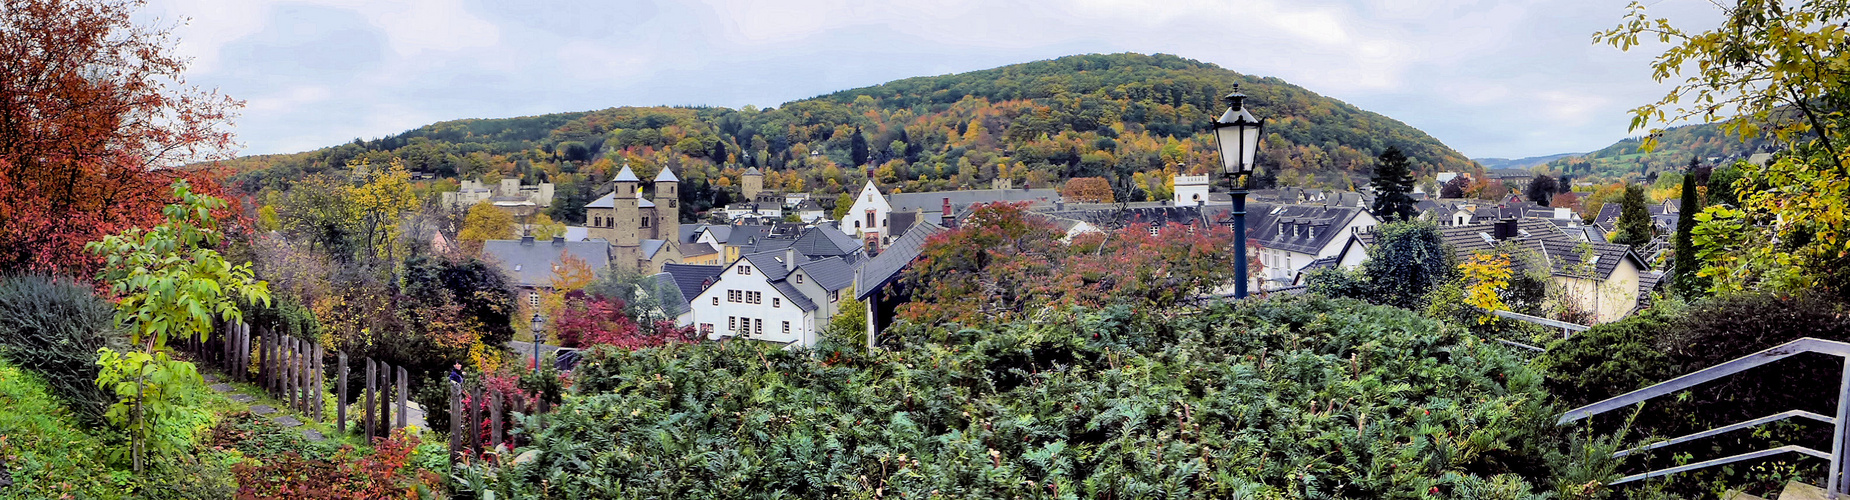 Herbst in Bad Münstereifel 1